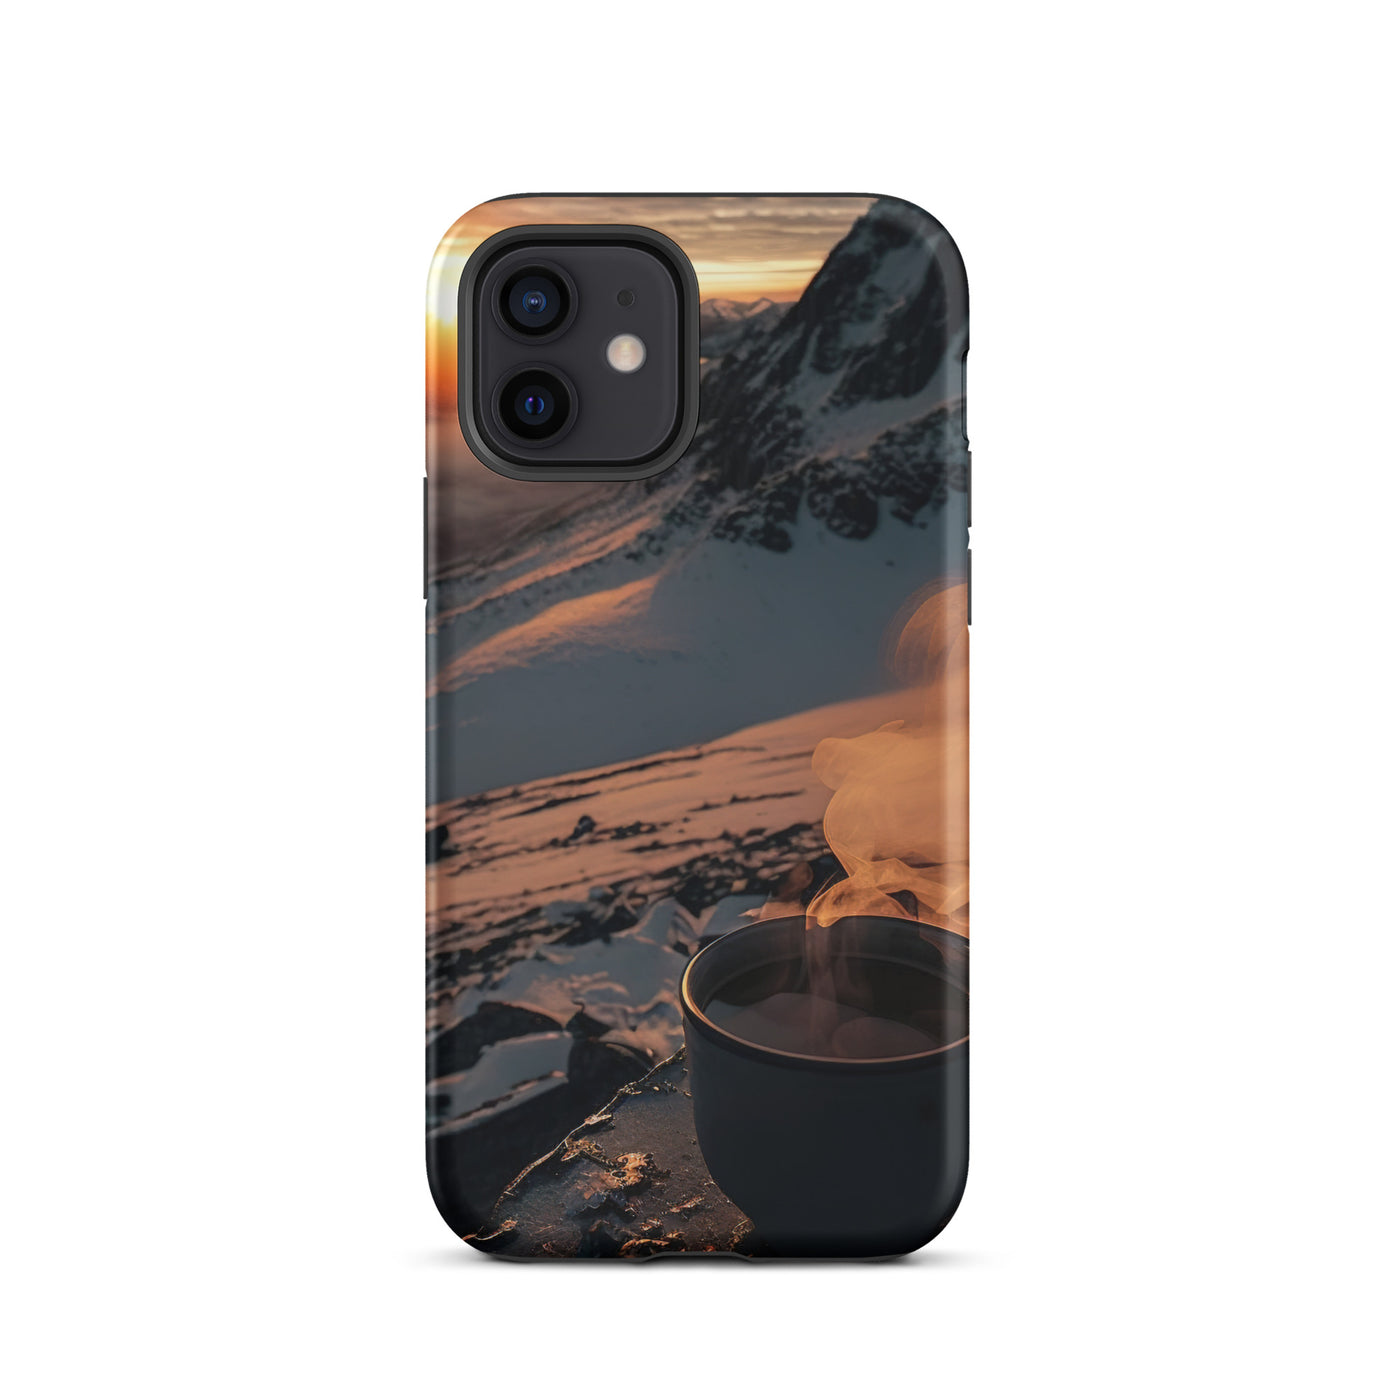 Heißer Kaffee auf einem schneebedeckten Berg - iPhone Schutzhülle (robust) berge xxx iPhone 12